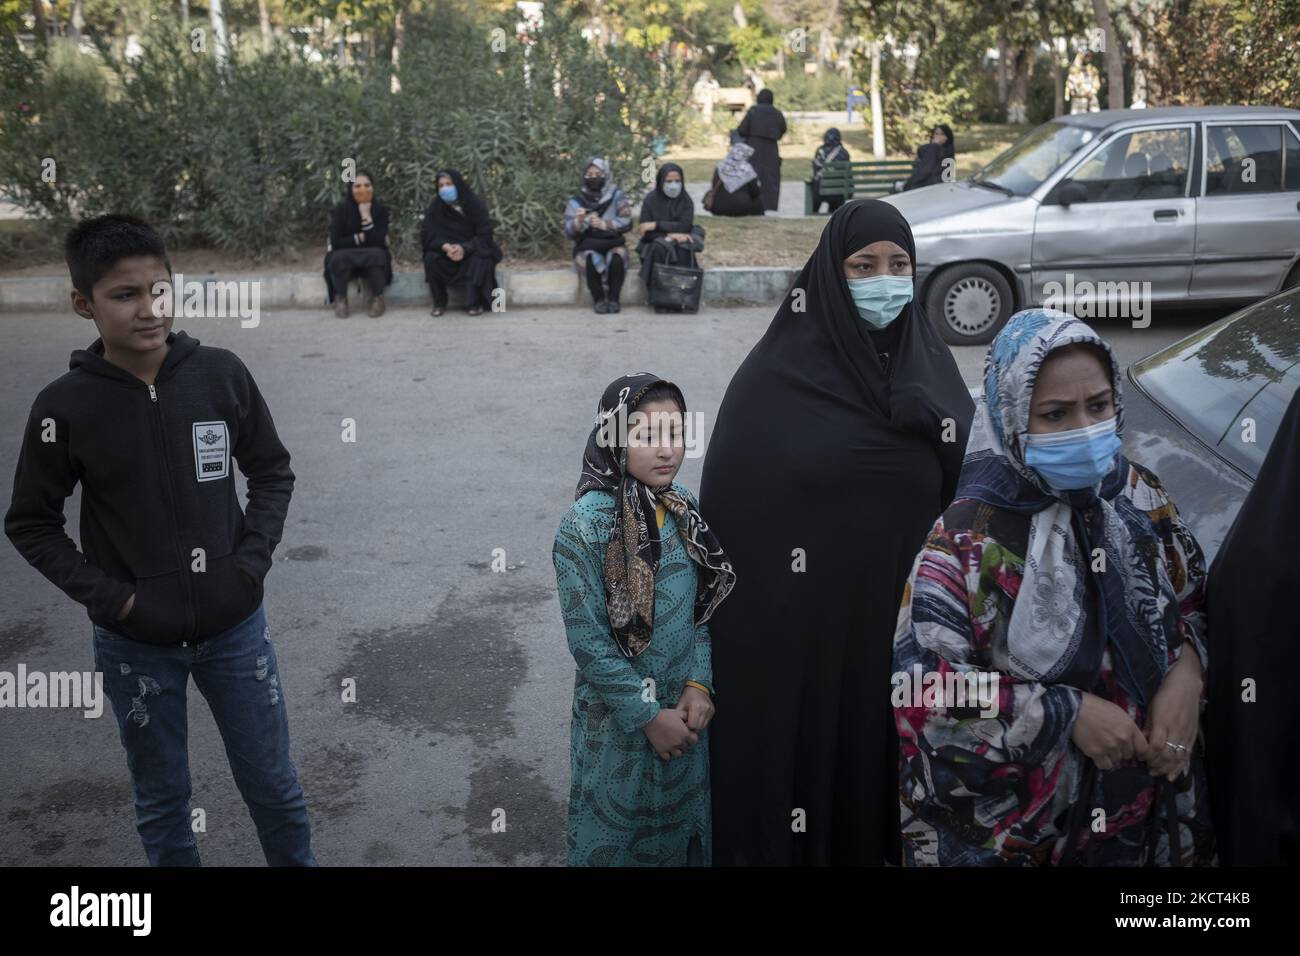 Famiglie di studentesse afghane rifugiate e scolari aspettano i loro figli mentre si levano in piedi fuori dalla scuola di Farhang nel primo giorno del nuovo anno accademico? Nel sud di Teheran il 1 novembre 2021. La scuola di Farhang è stata fondata nel 2000 dal rifugiato afgano Nader Mousavi che si è laureato in sociologia presso l'Università di Teheran, per i bambini rifugiati afghani, E ora due anni dopo l’inizio dell’epidemia COVID-19 in Iran, dove la scuola operava a tempo parziale, ha iniziato a funzionare a tempo pieno e le scolaresche e gli scolari afghani possono frequentare la scuola. Le famiglie fanno h Foto Stock